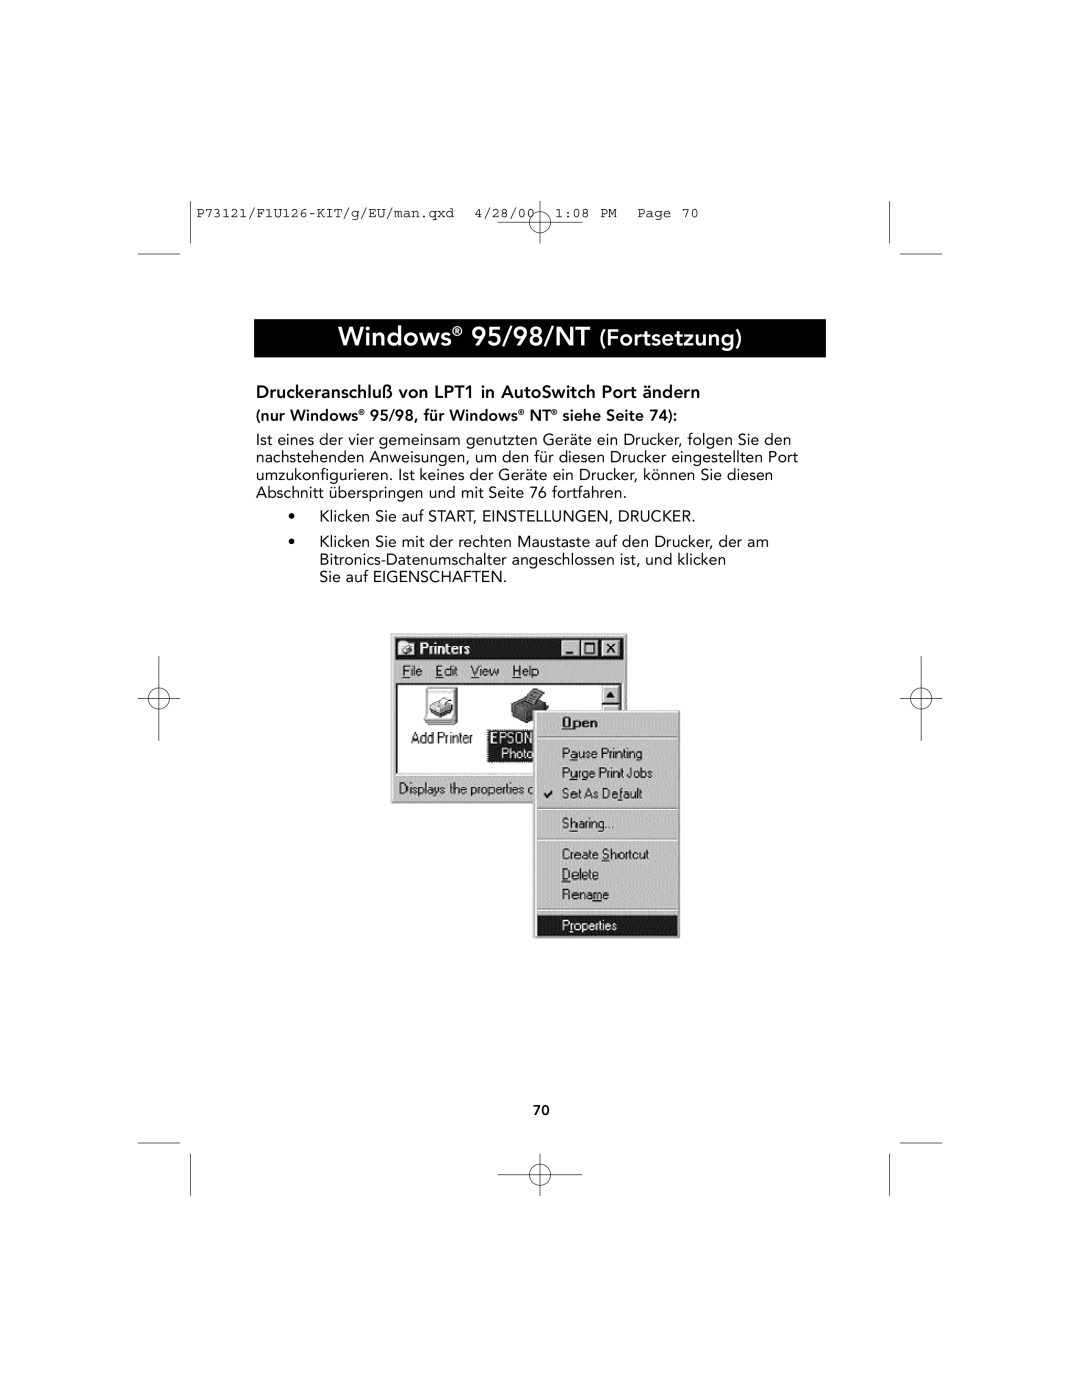 Belkin P73121, F1U126-KIT user manual Windows 95/98/NT Fortsetzung, Druckeranschluß von LPT1 in AutoSwitch Port ändern 